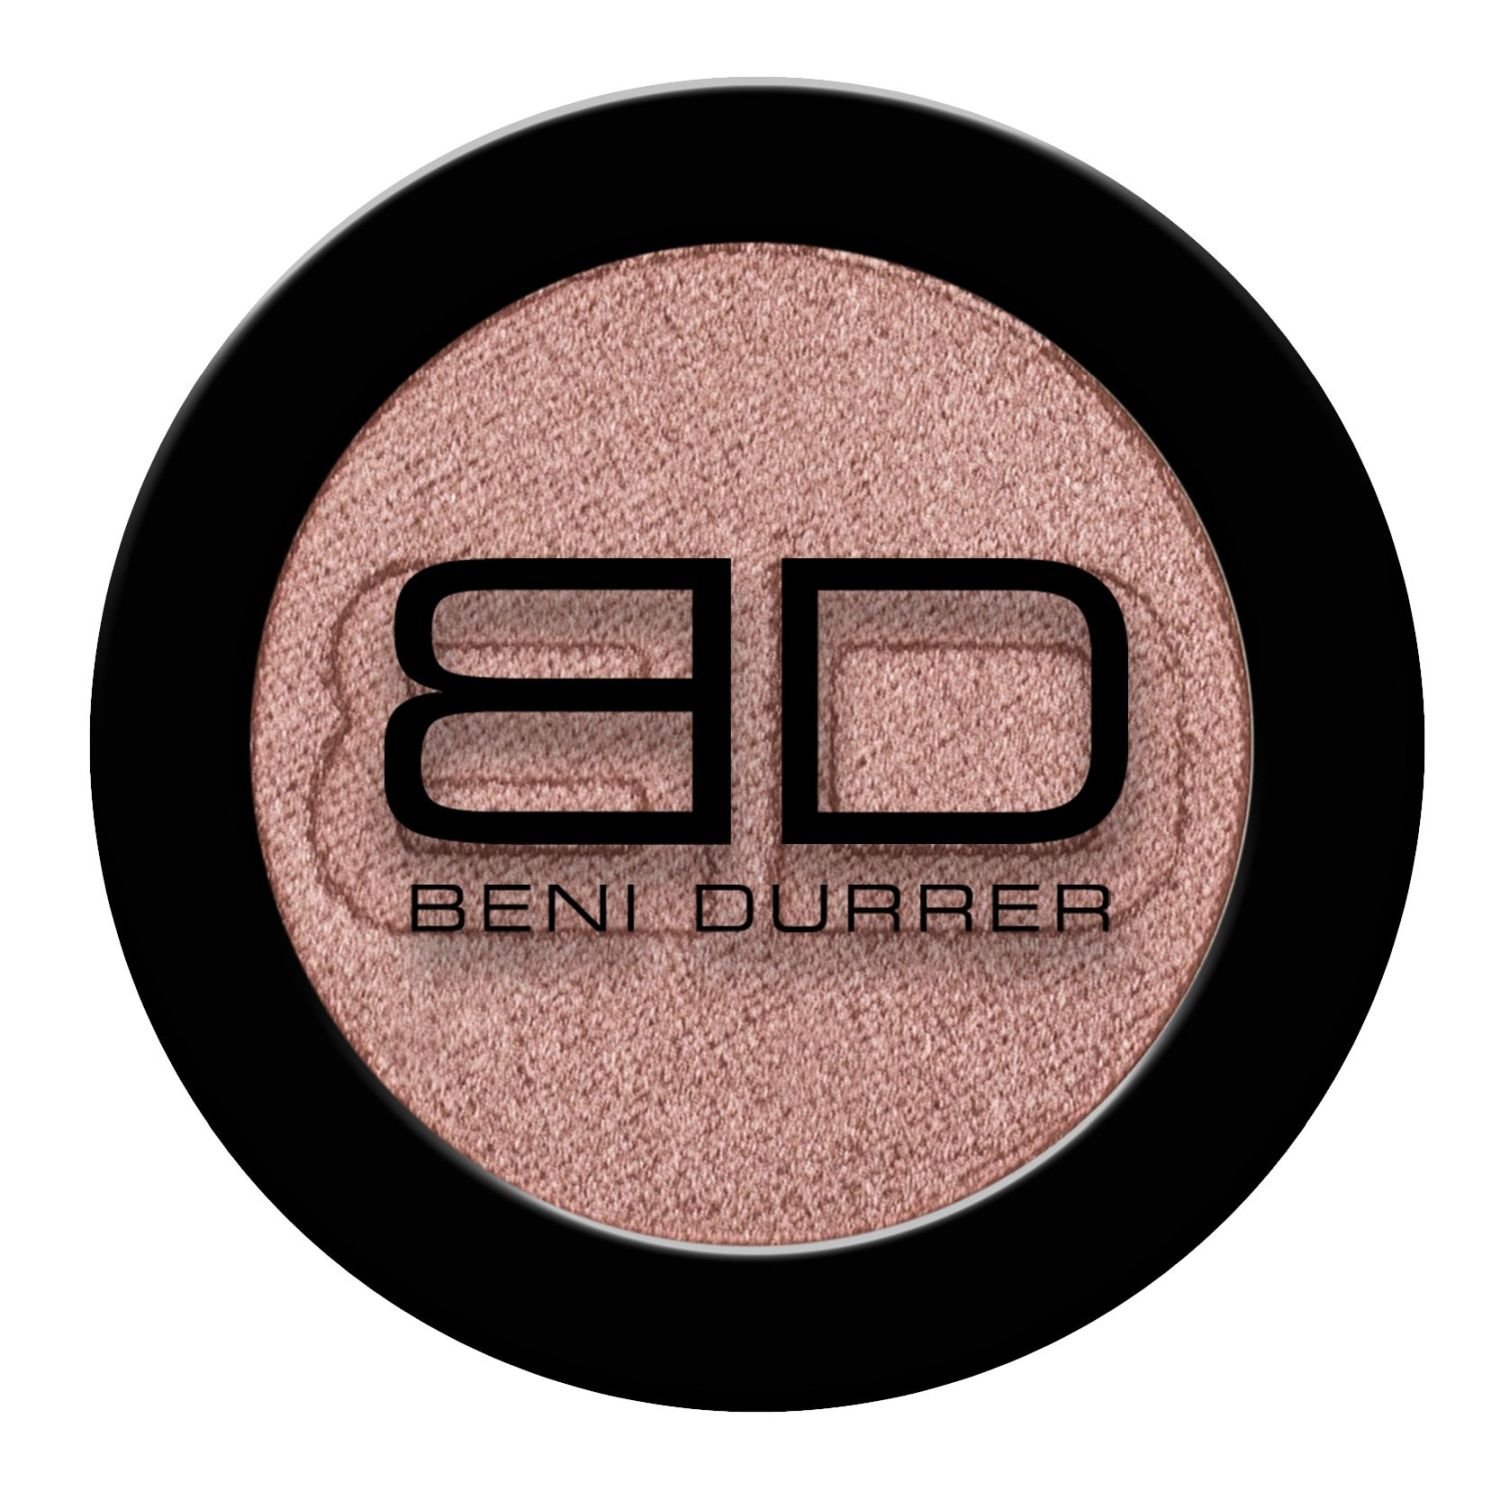 Beni Durrer 040668 - Puderpigmente Tausendschön, warm - glänzend, 2,5 g, in eleganter Klappdose